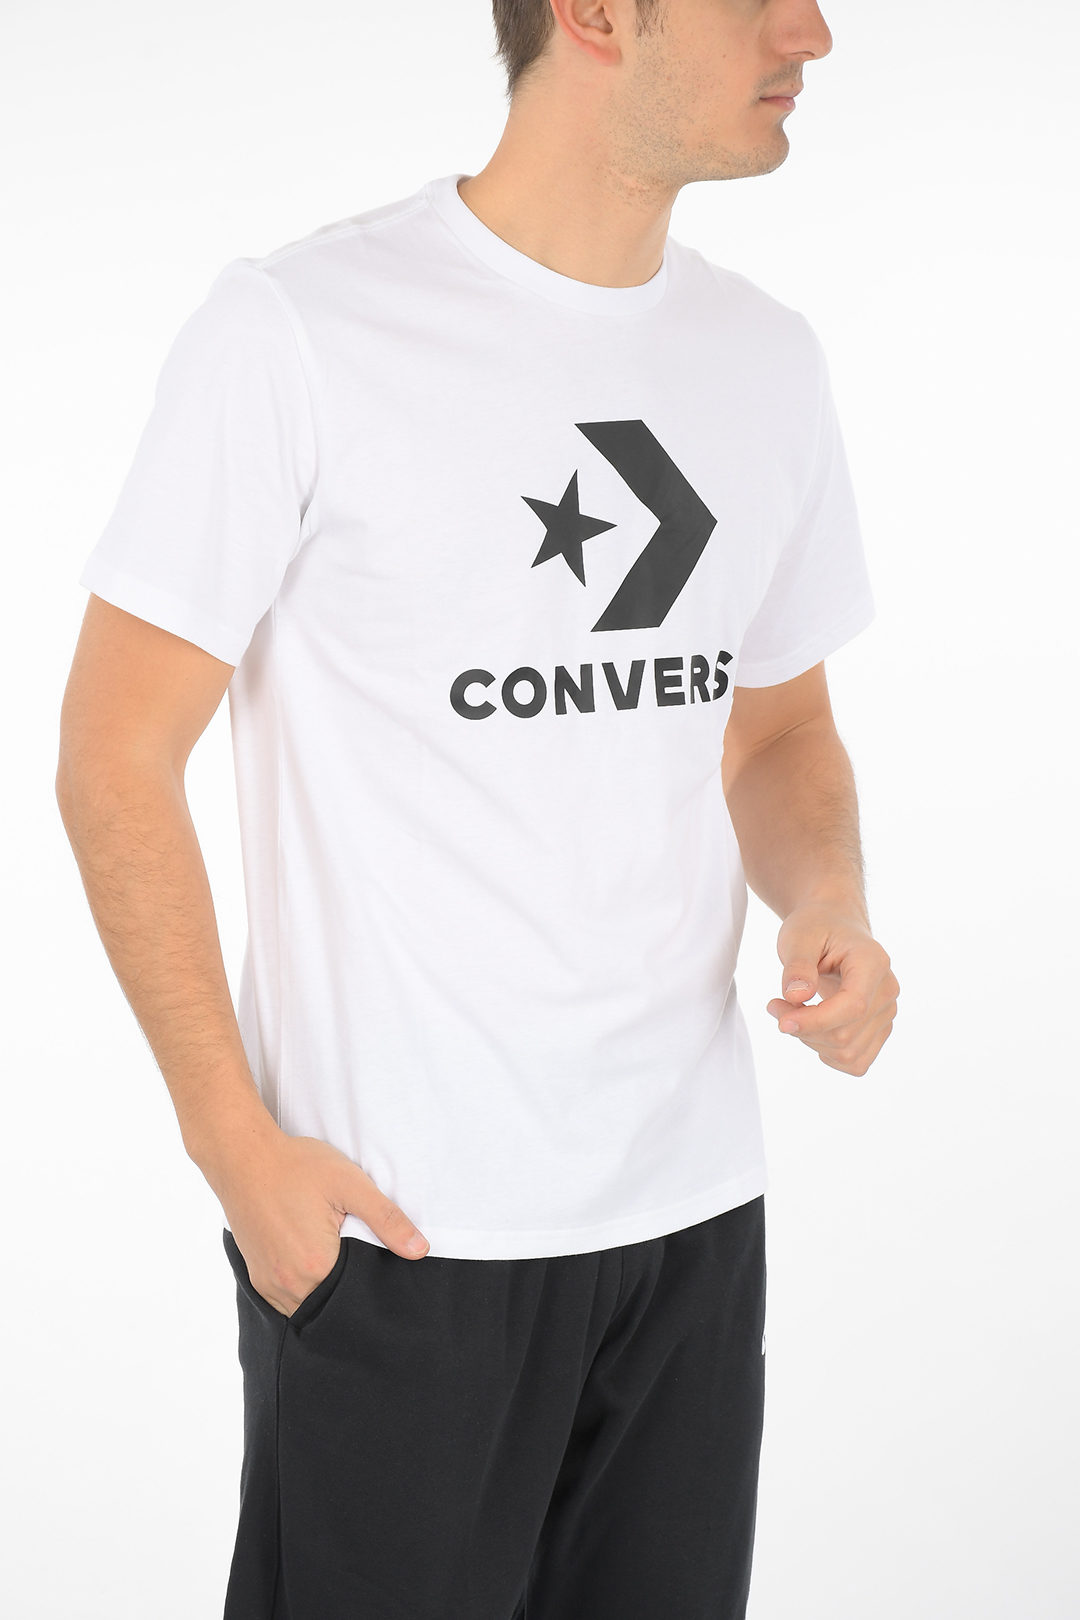 Converse Printed T-shirt men - Glamood